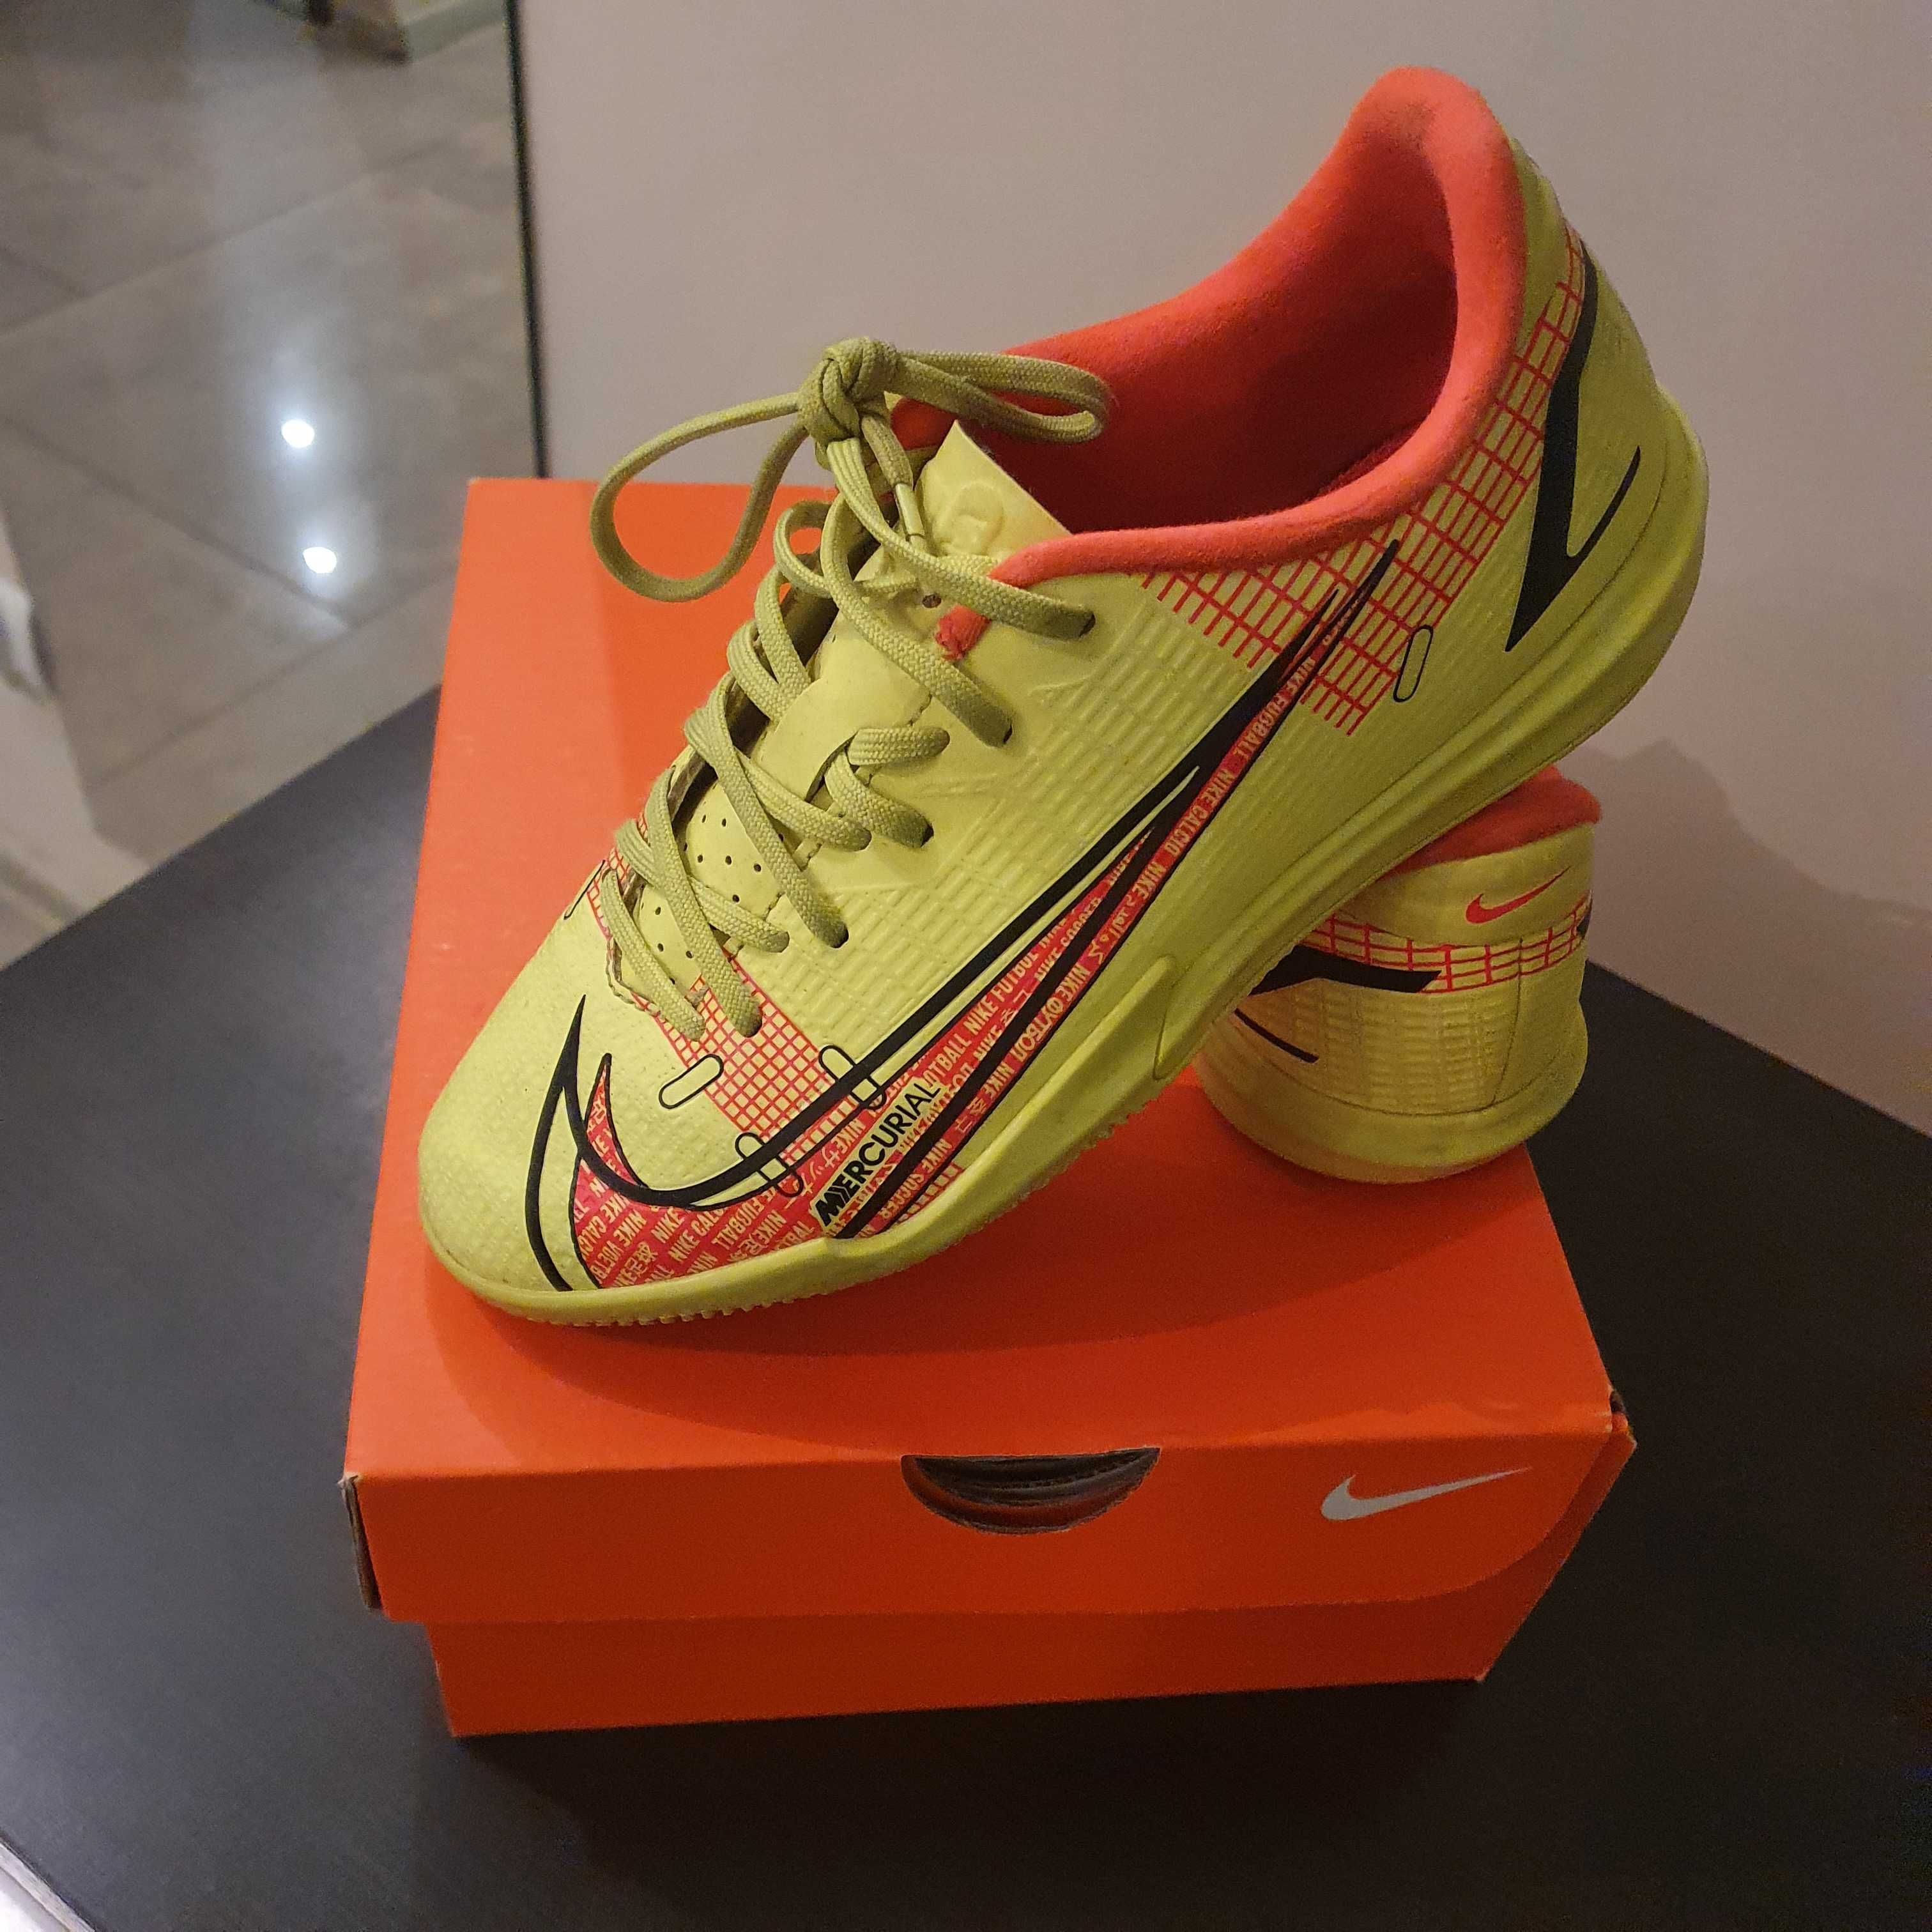 Nike Jr Vapor buty chłopięce piłkarskie r.34